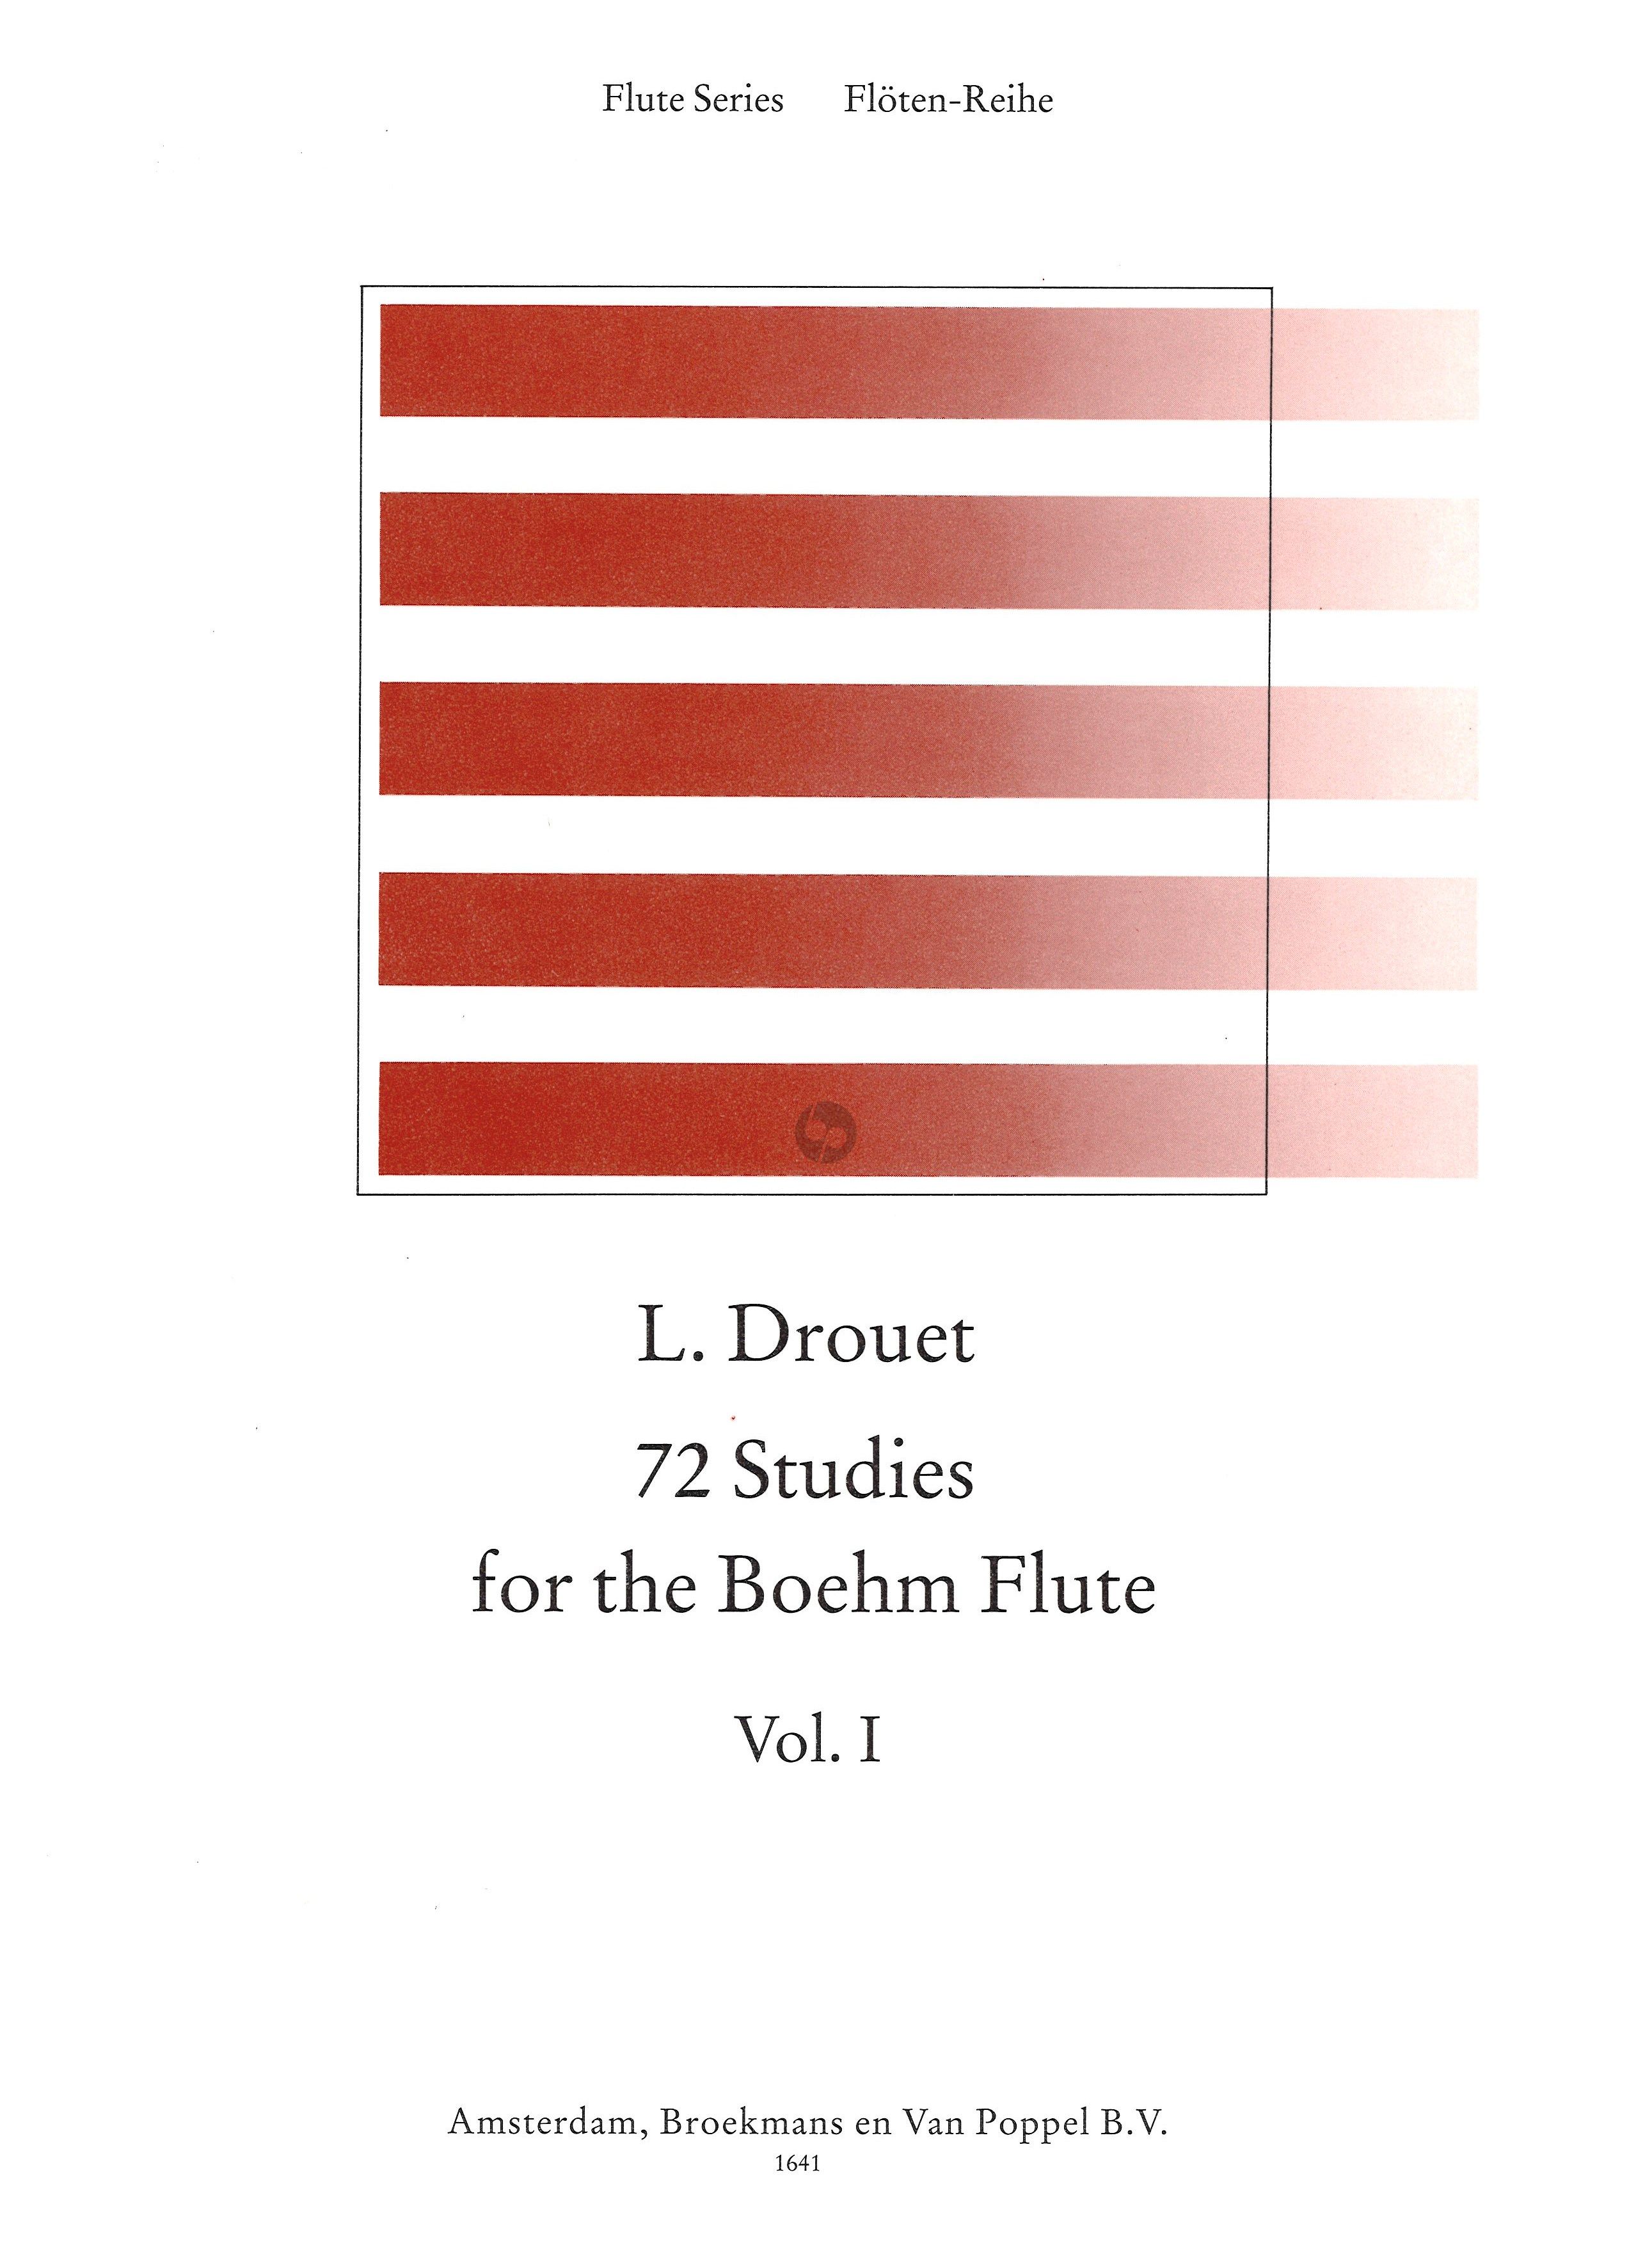 72 Studies for the Boehm Flute Vol 1.